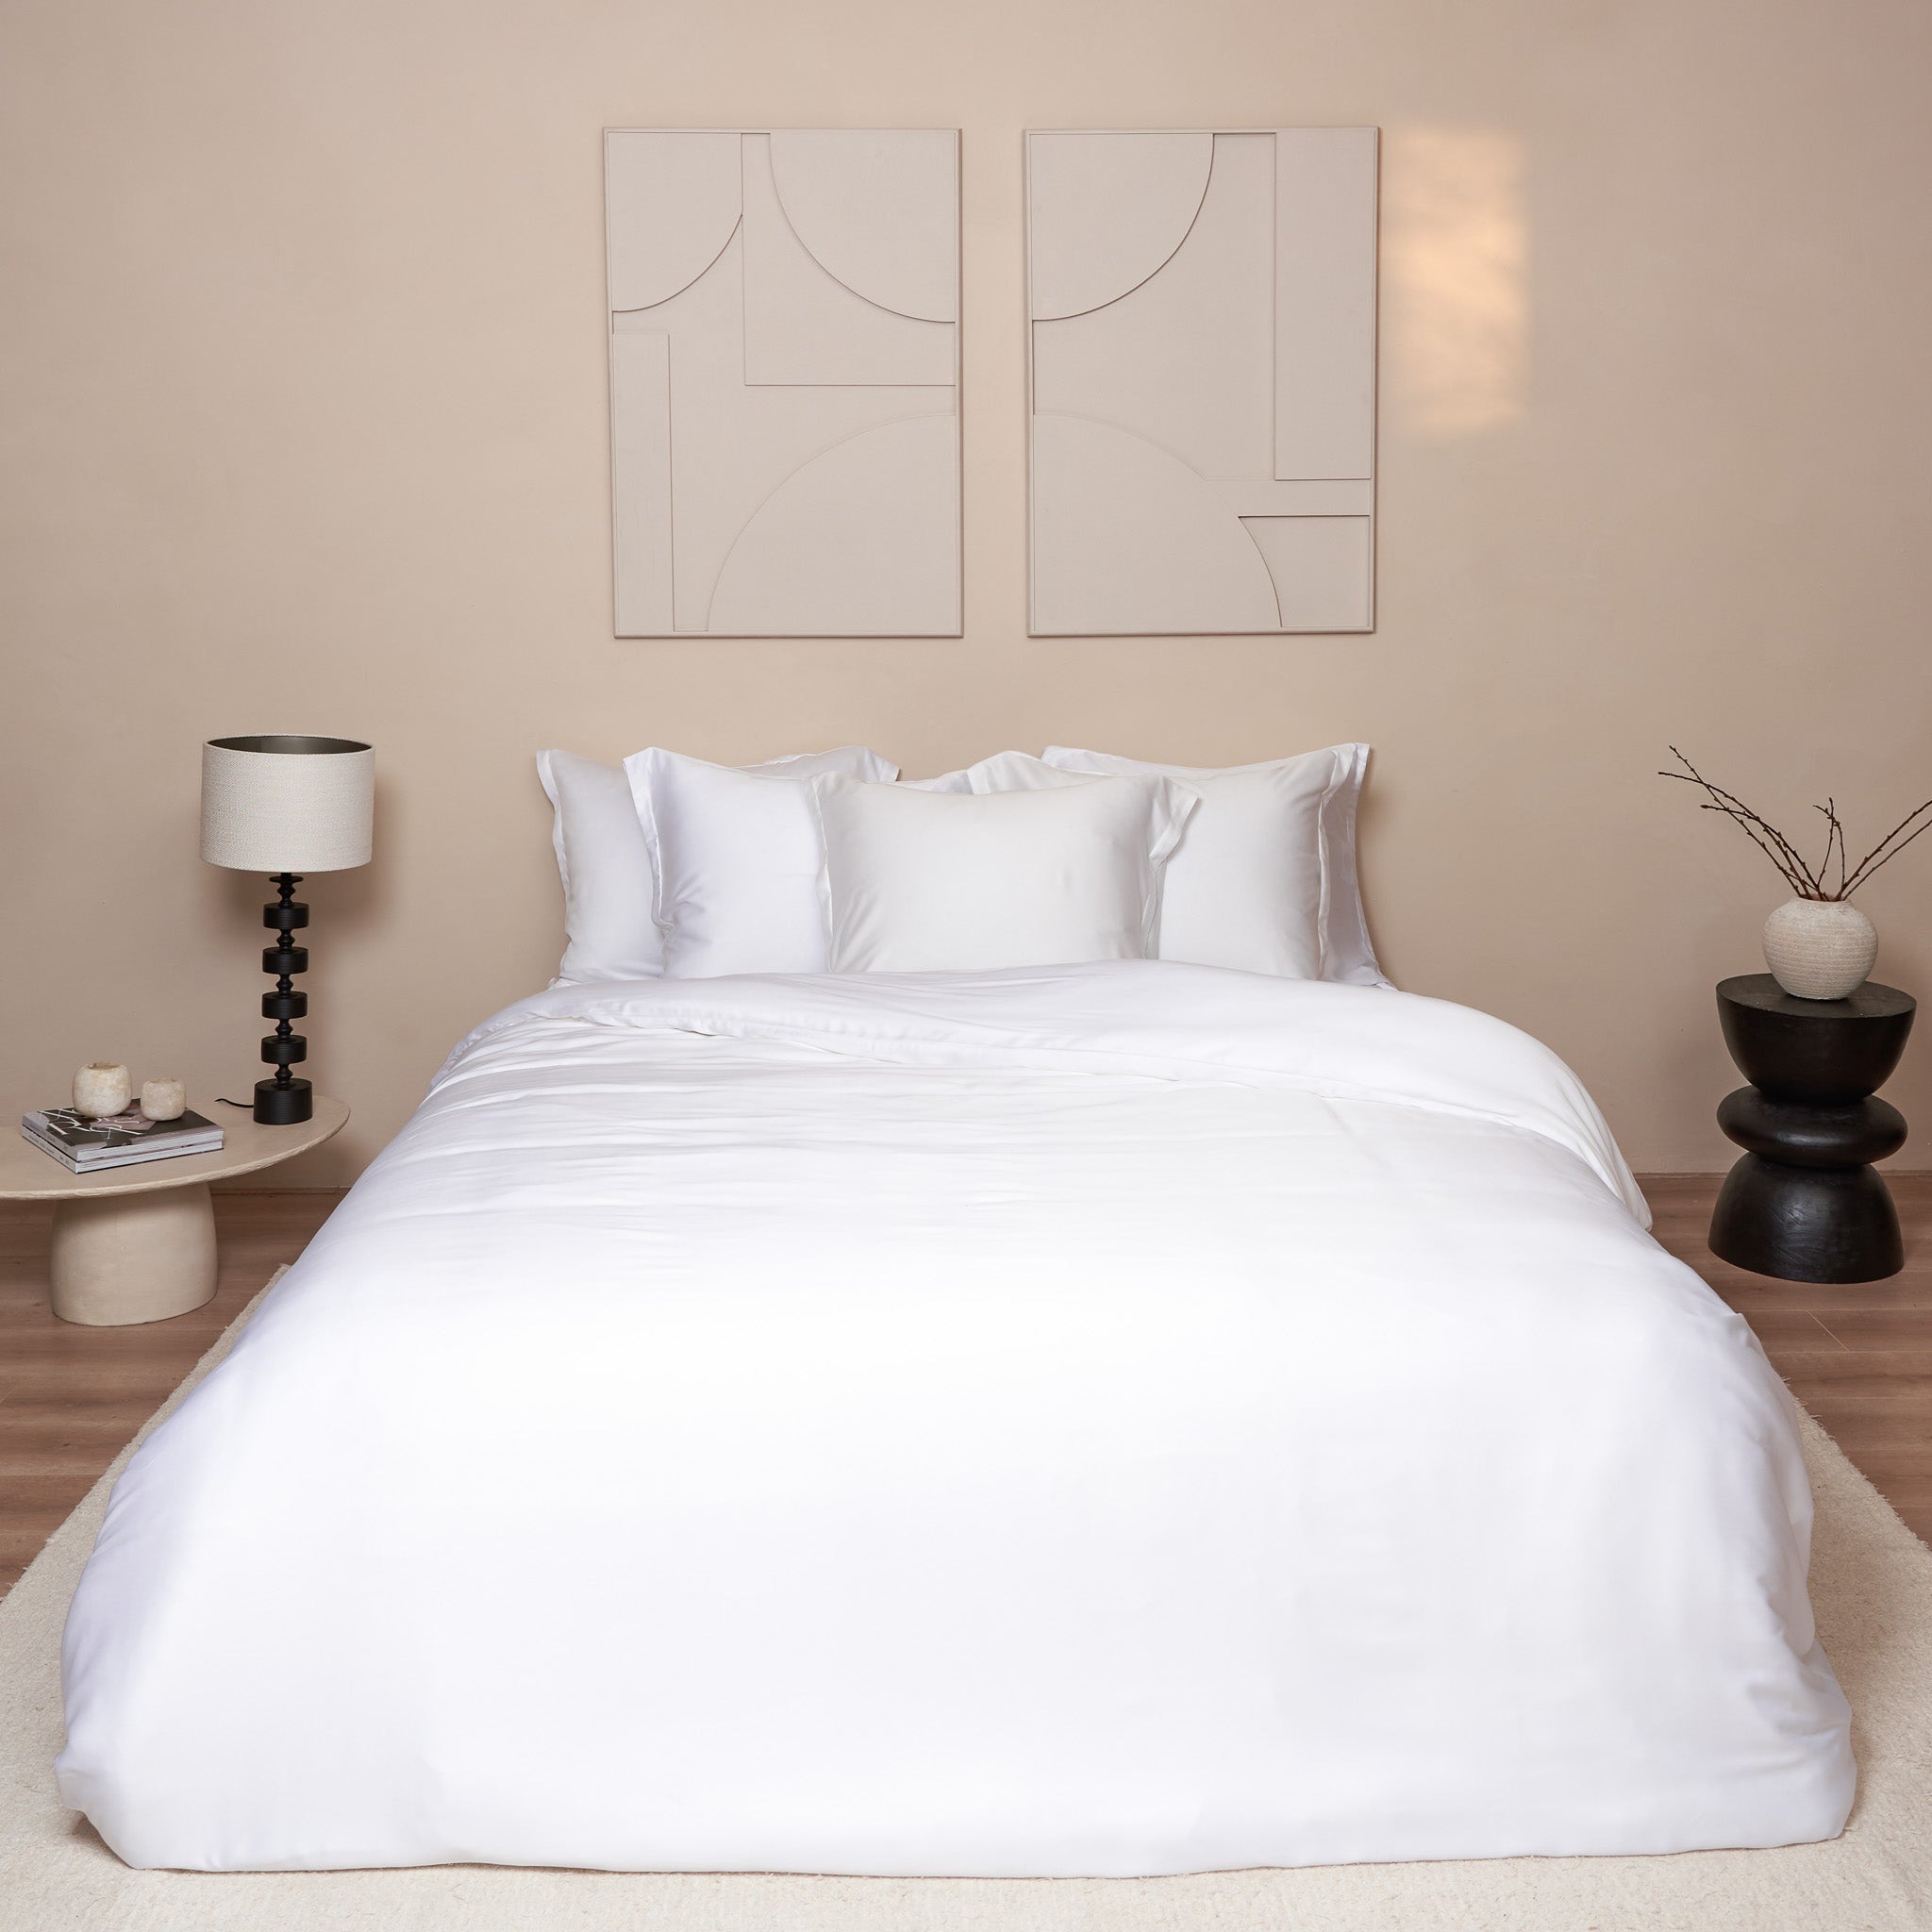 Mooie slaapkamer met wit opgemaakt beddengoed van de stof Tencel. Je ziet kussenslopen en een dekbedovertrek.